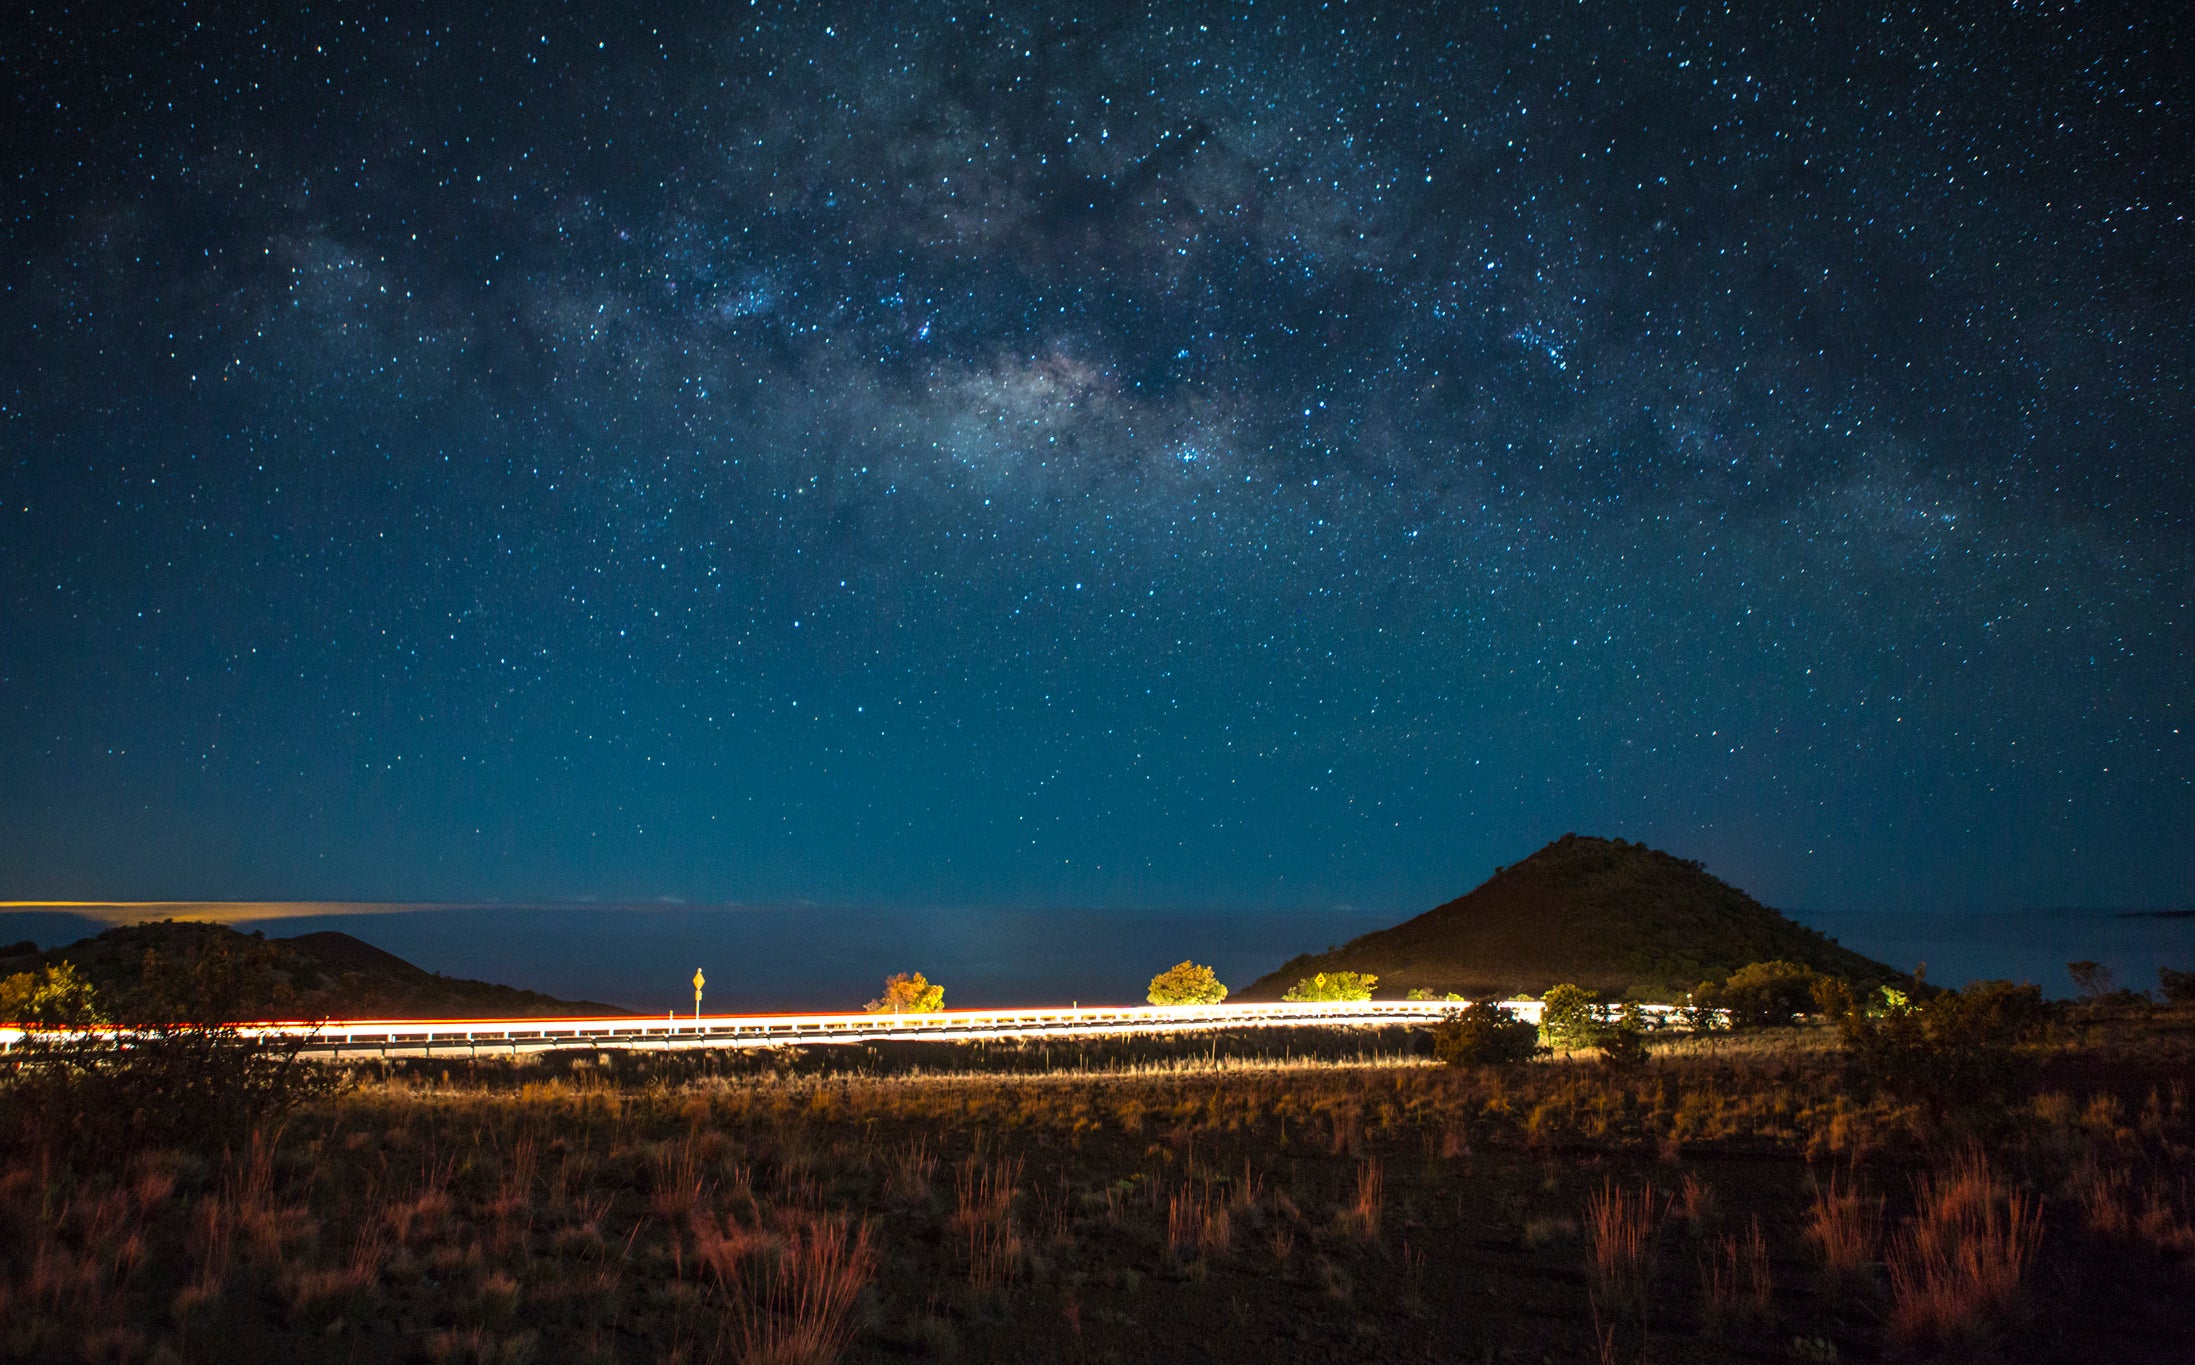  Mirando las estrellas por encima de las nubes en el volcán Mauna Kea de Hawai. (crédito de la foto: JT Sorrell)